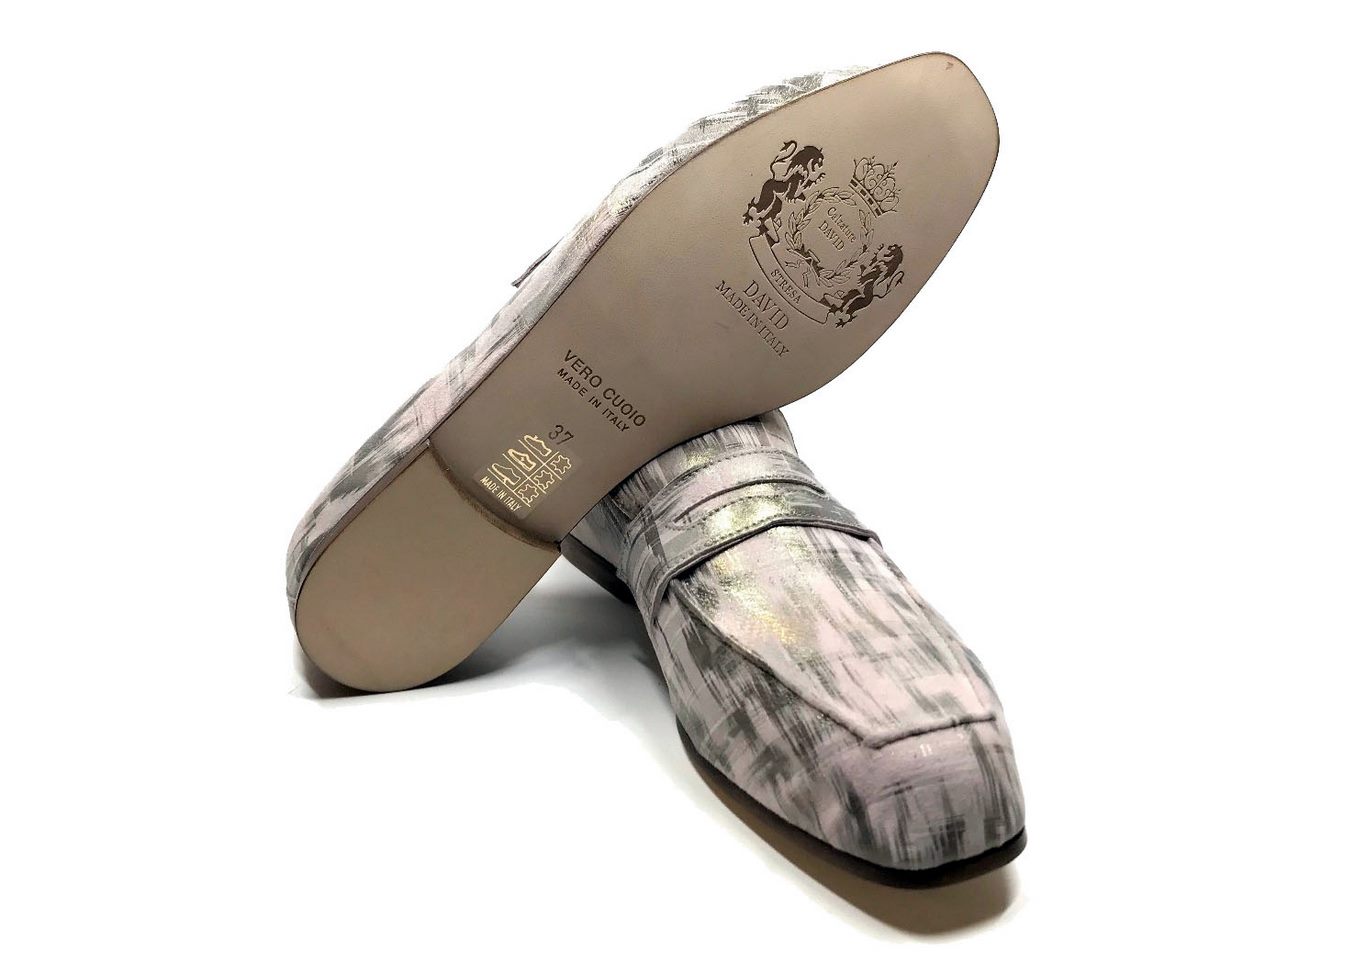 Loafers 'Tasca' in calfskin silkscreened Matu Cipria™